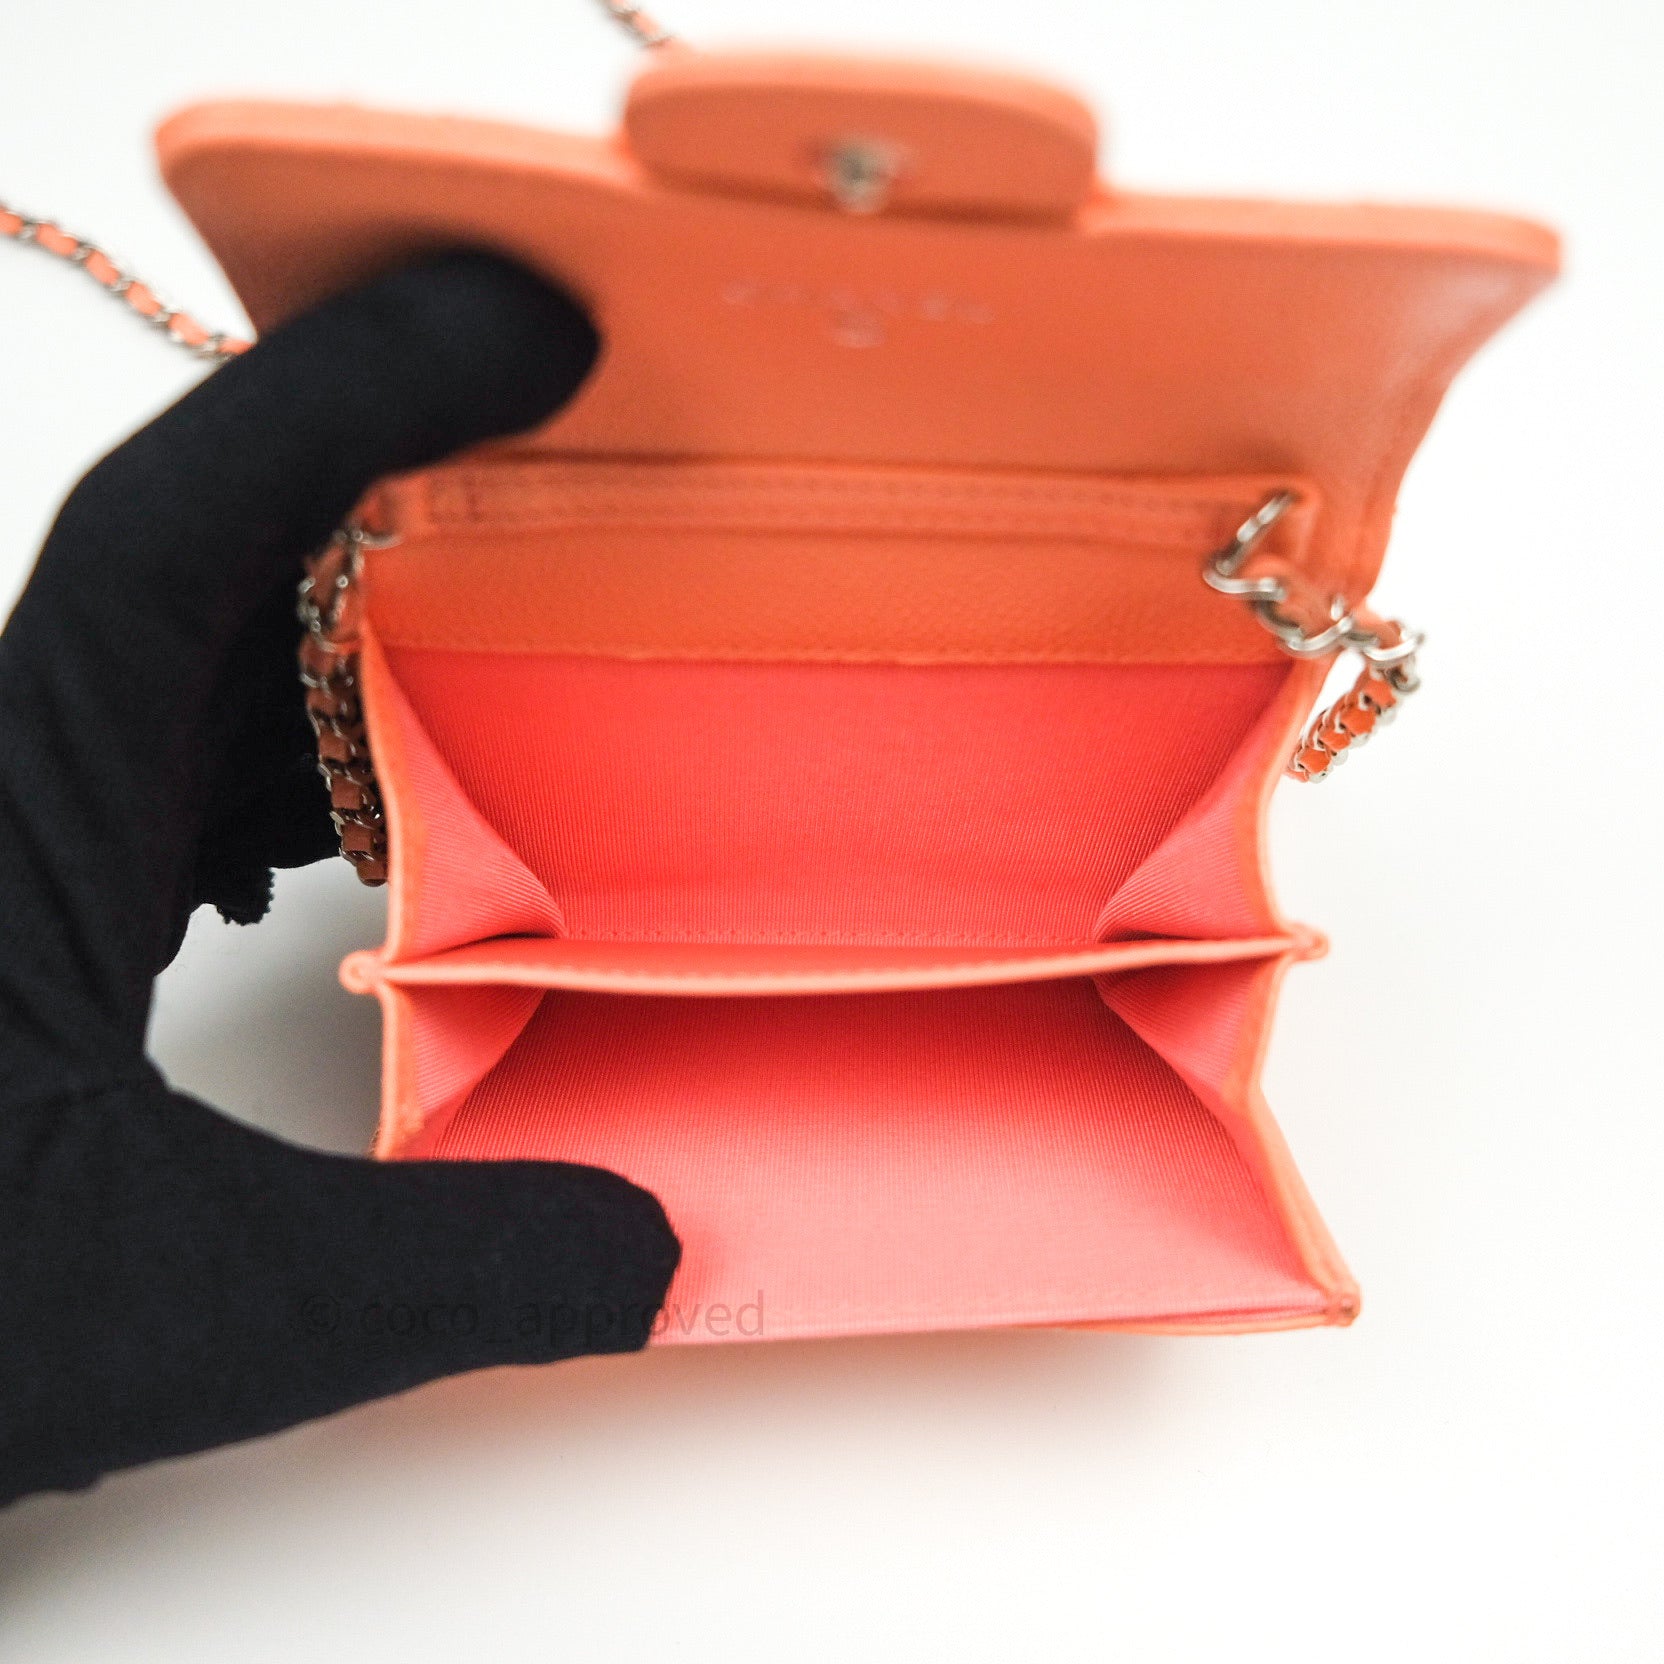 vintage pink chanel wallet